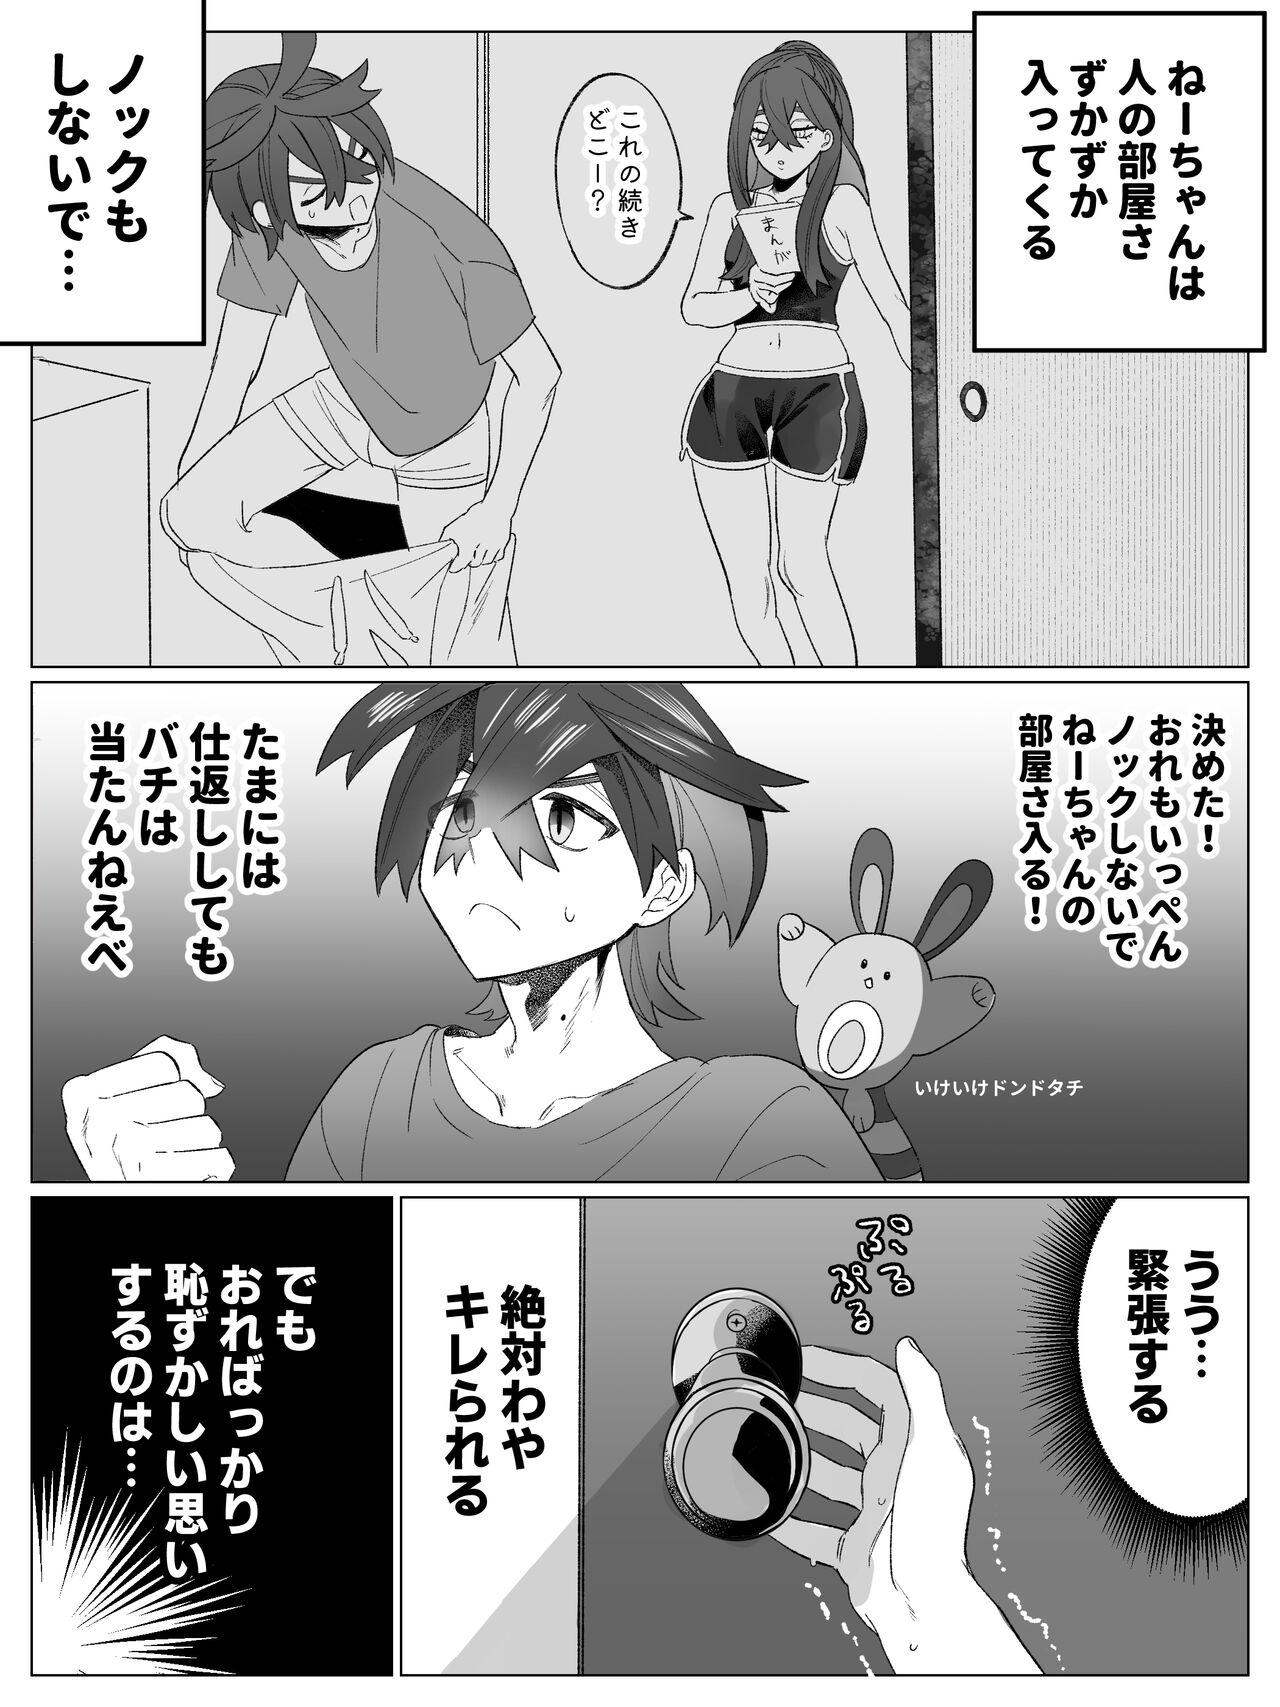 Amigos Miuchi no Onanie Miru no wa Kitsui - Pokemon | pocket monsters Snatch - Page 2